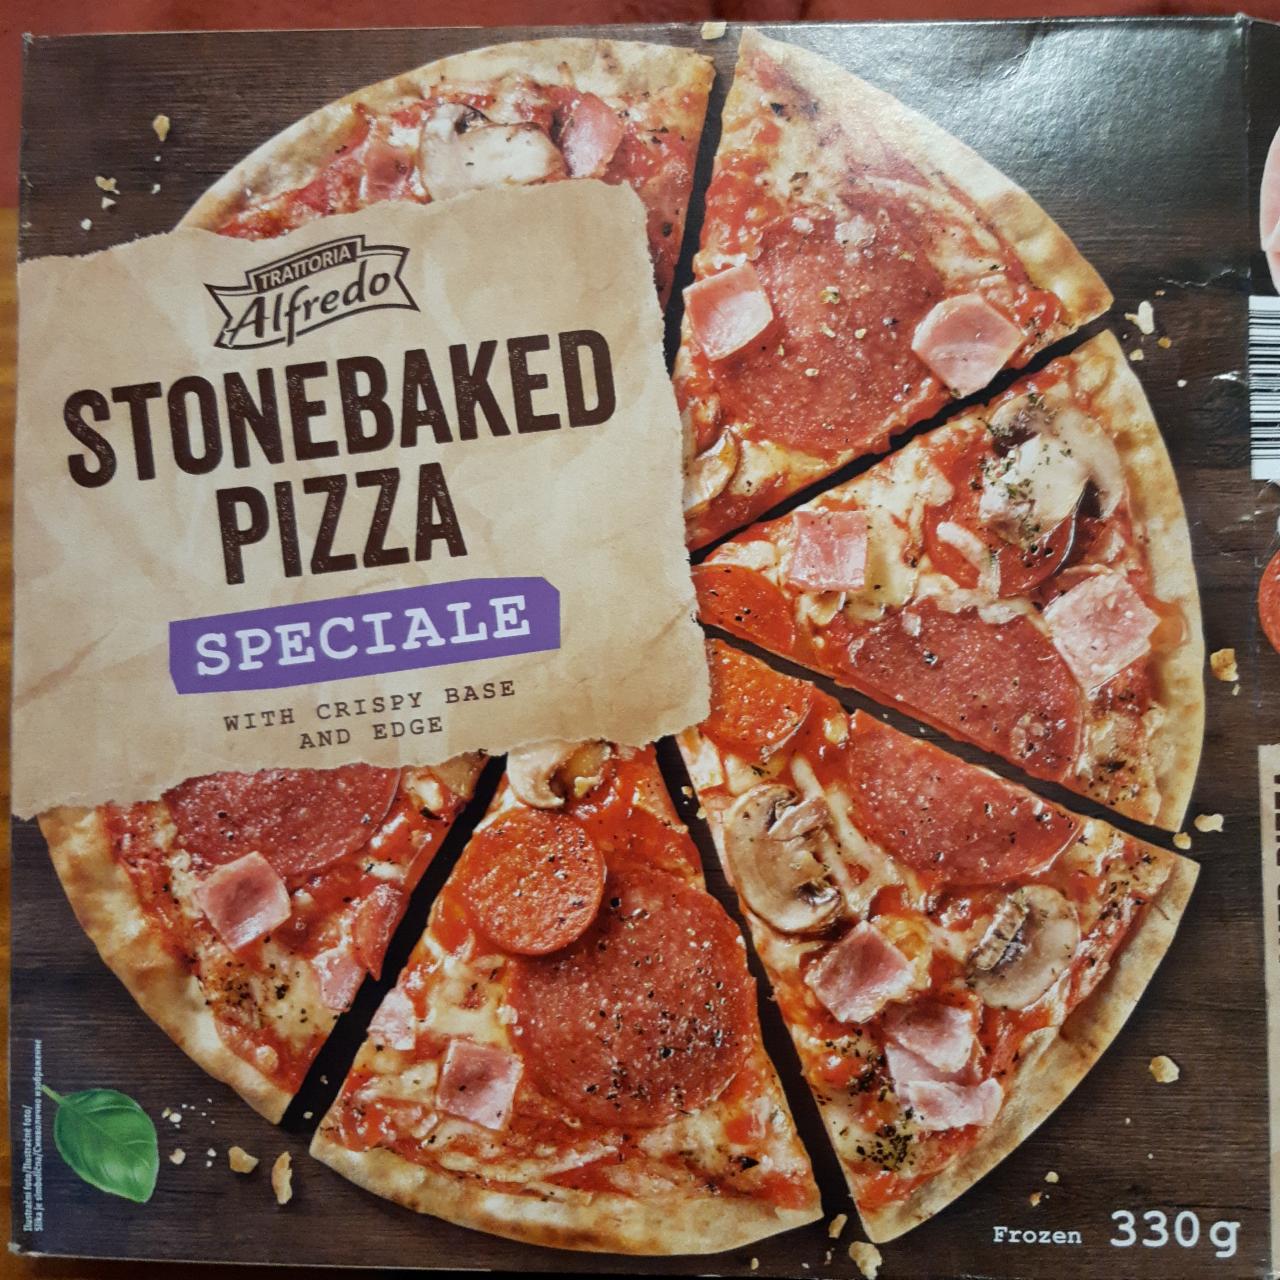 Fotografie - Stonebaked pizza speciale Alfredo